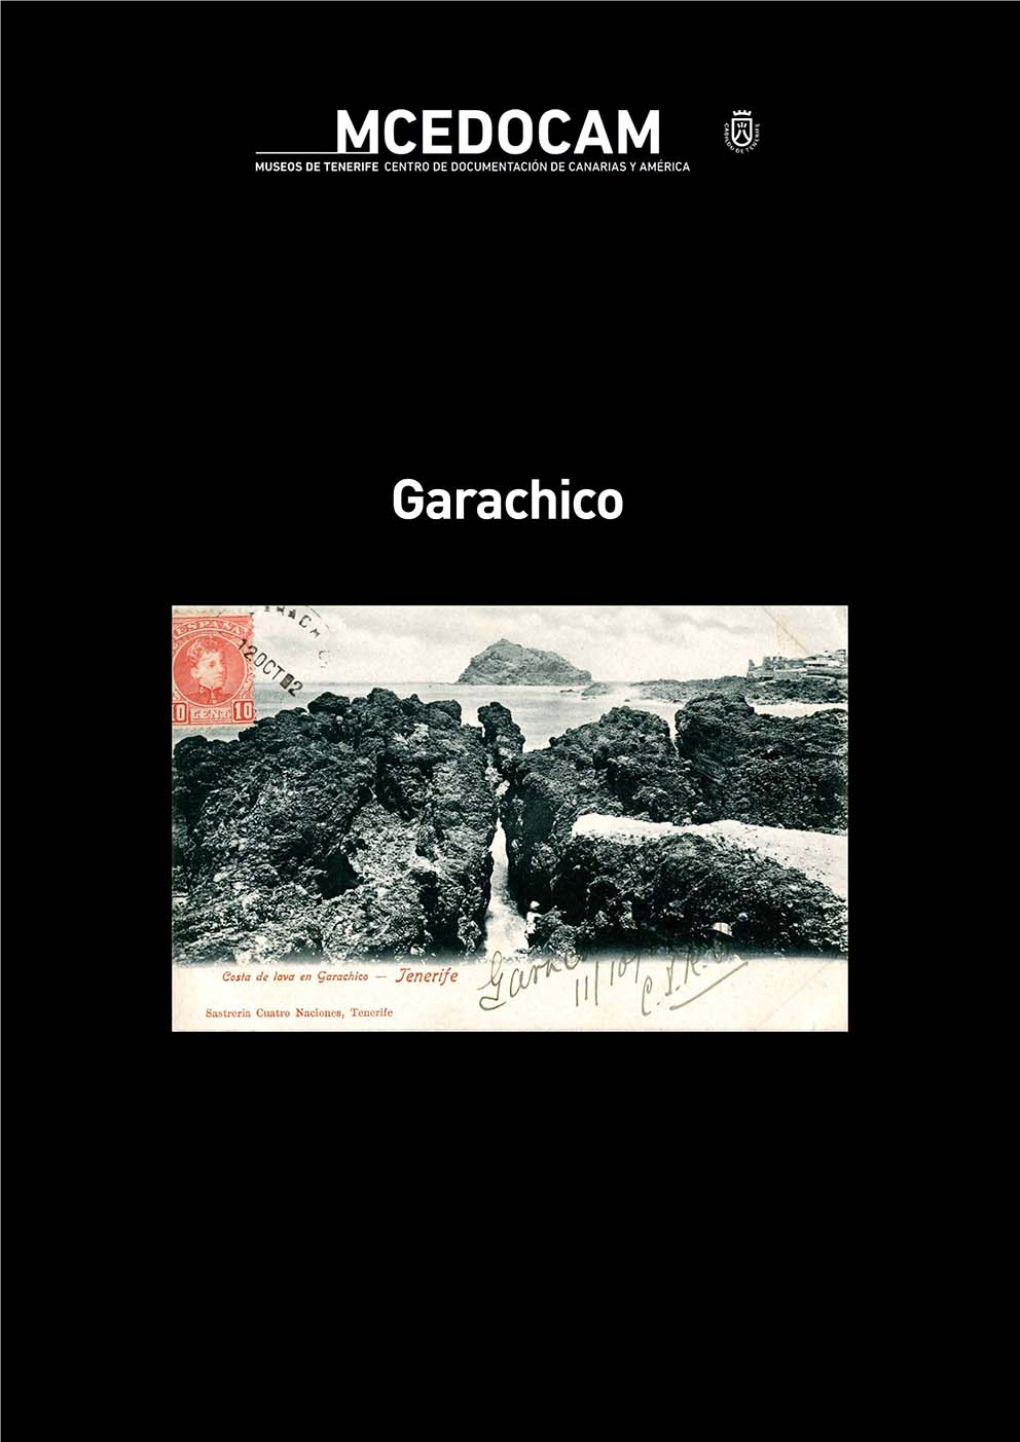 Garachico, Es El Título Del Nuevo Monográfico Del Centro De Documentación De Canarias Y América (CEDOCAM)